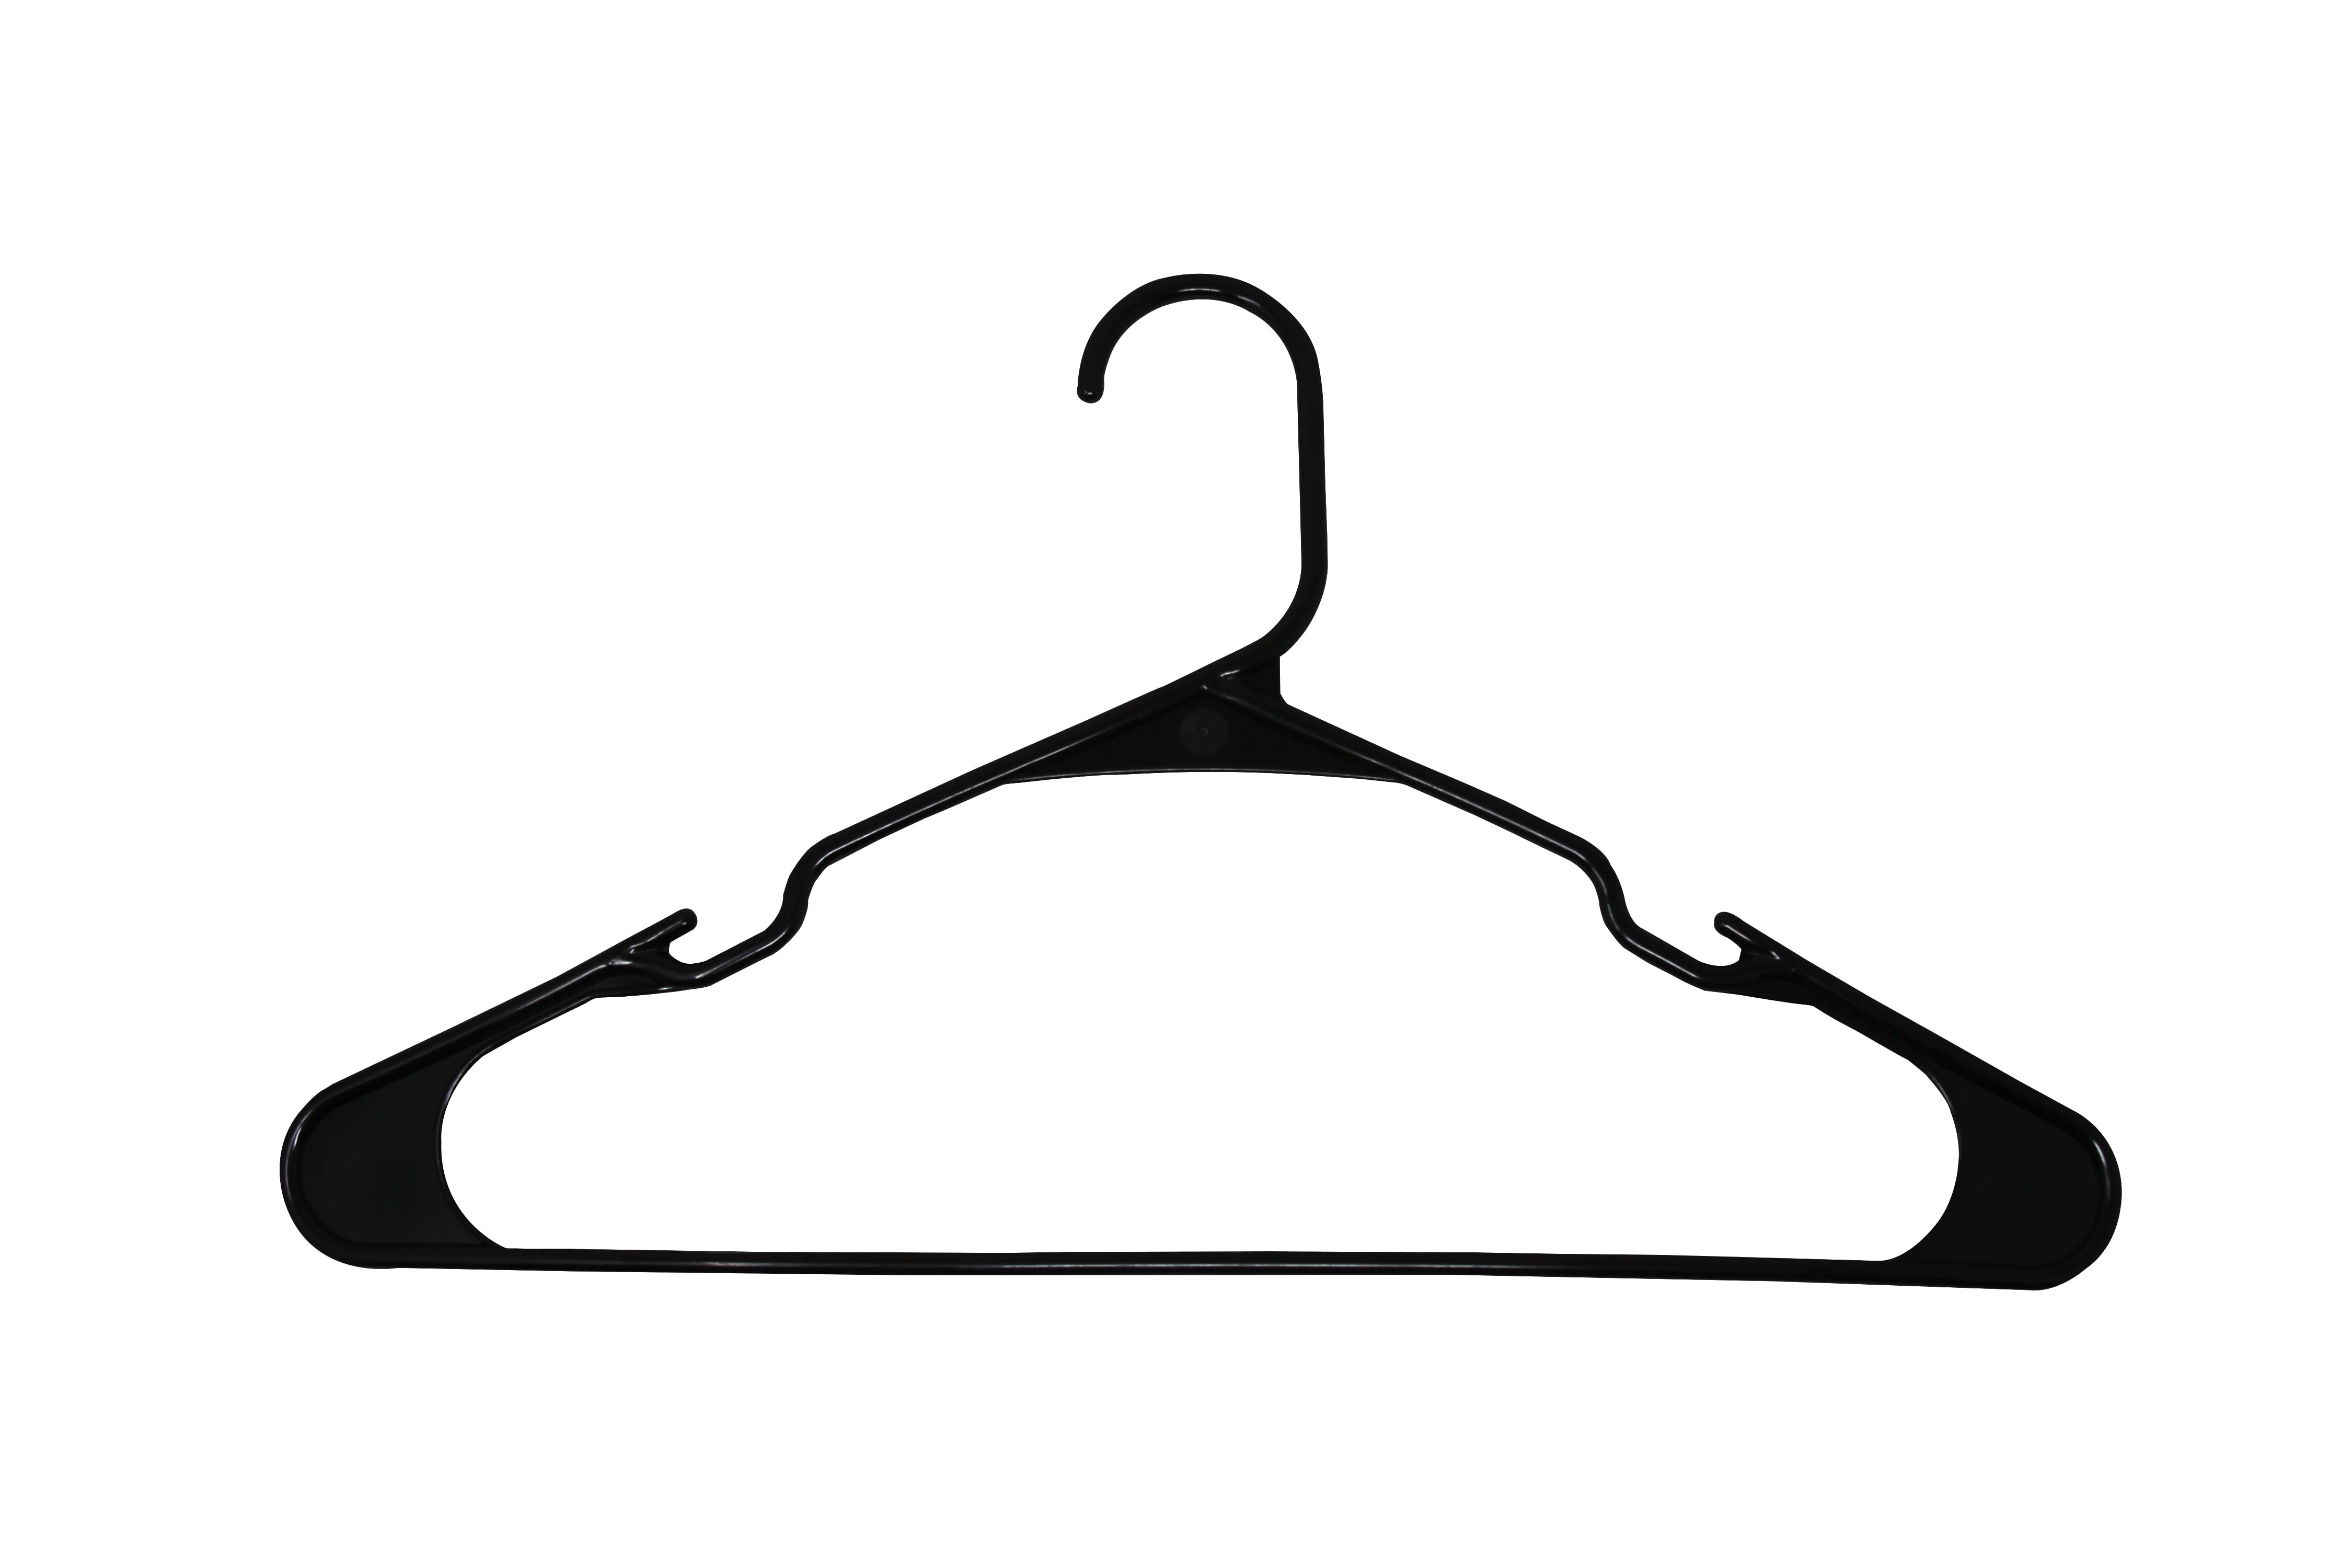 Hastings Home Metal Clothing Hanger (Black) - Set of 10, Space